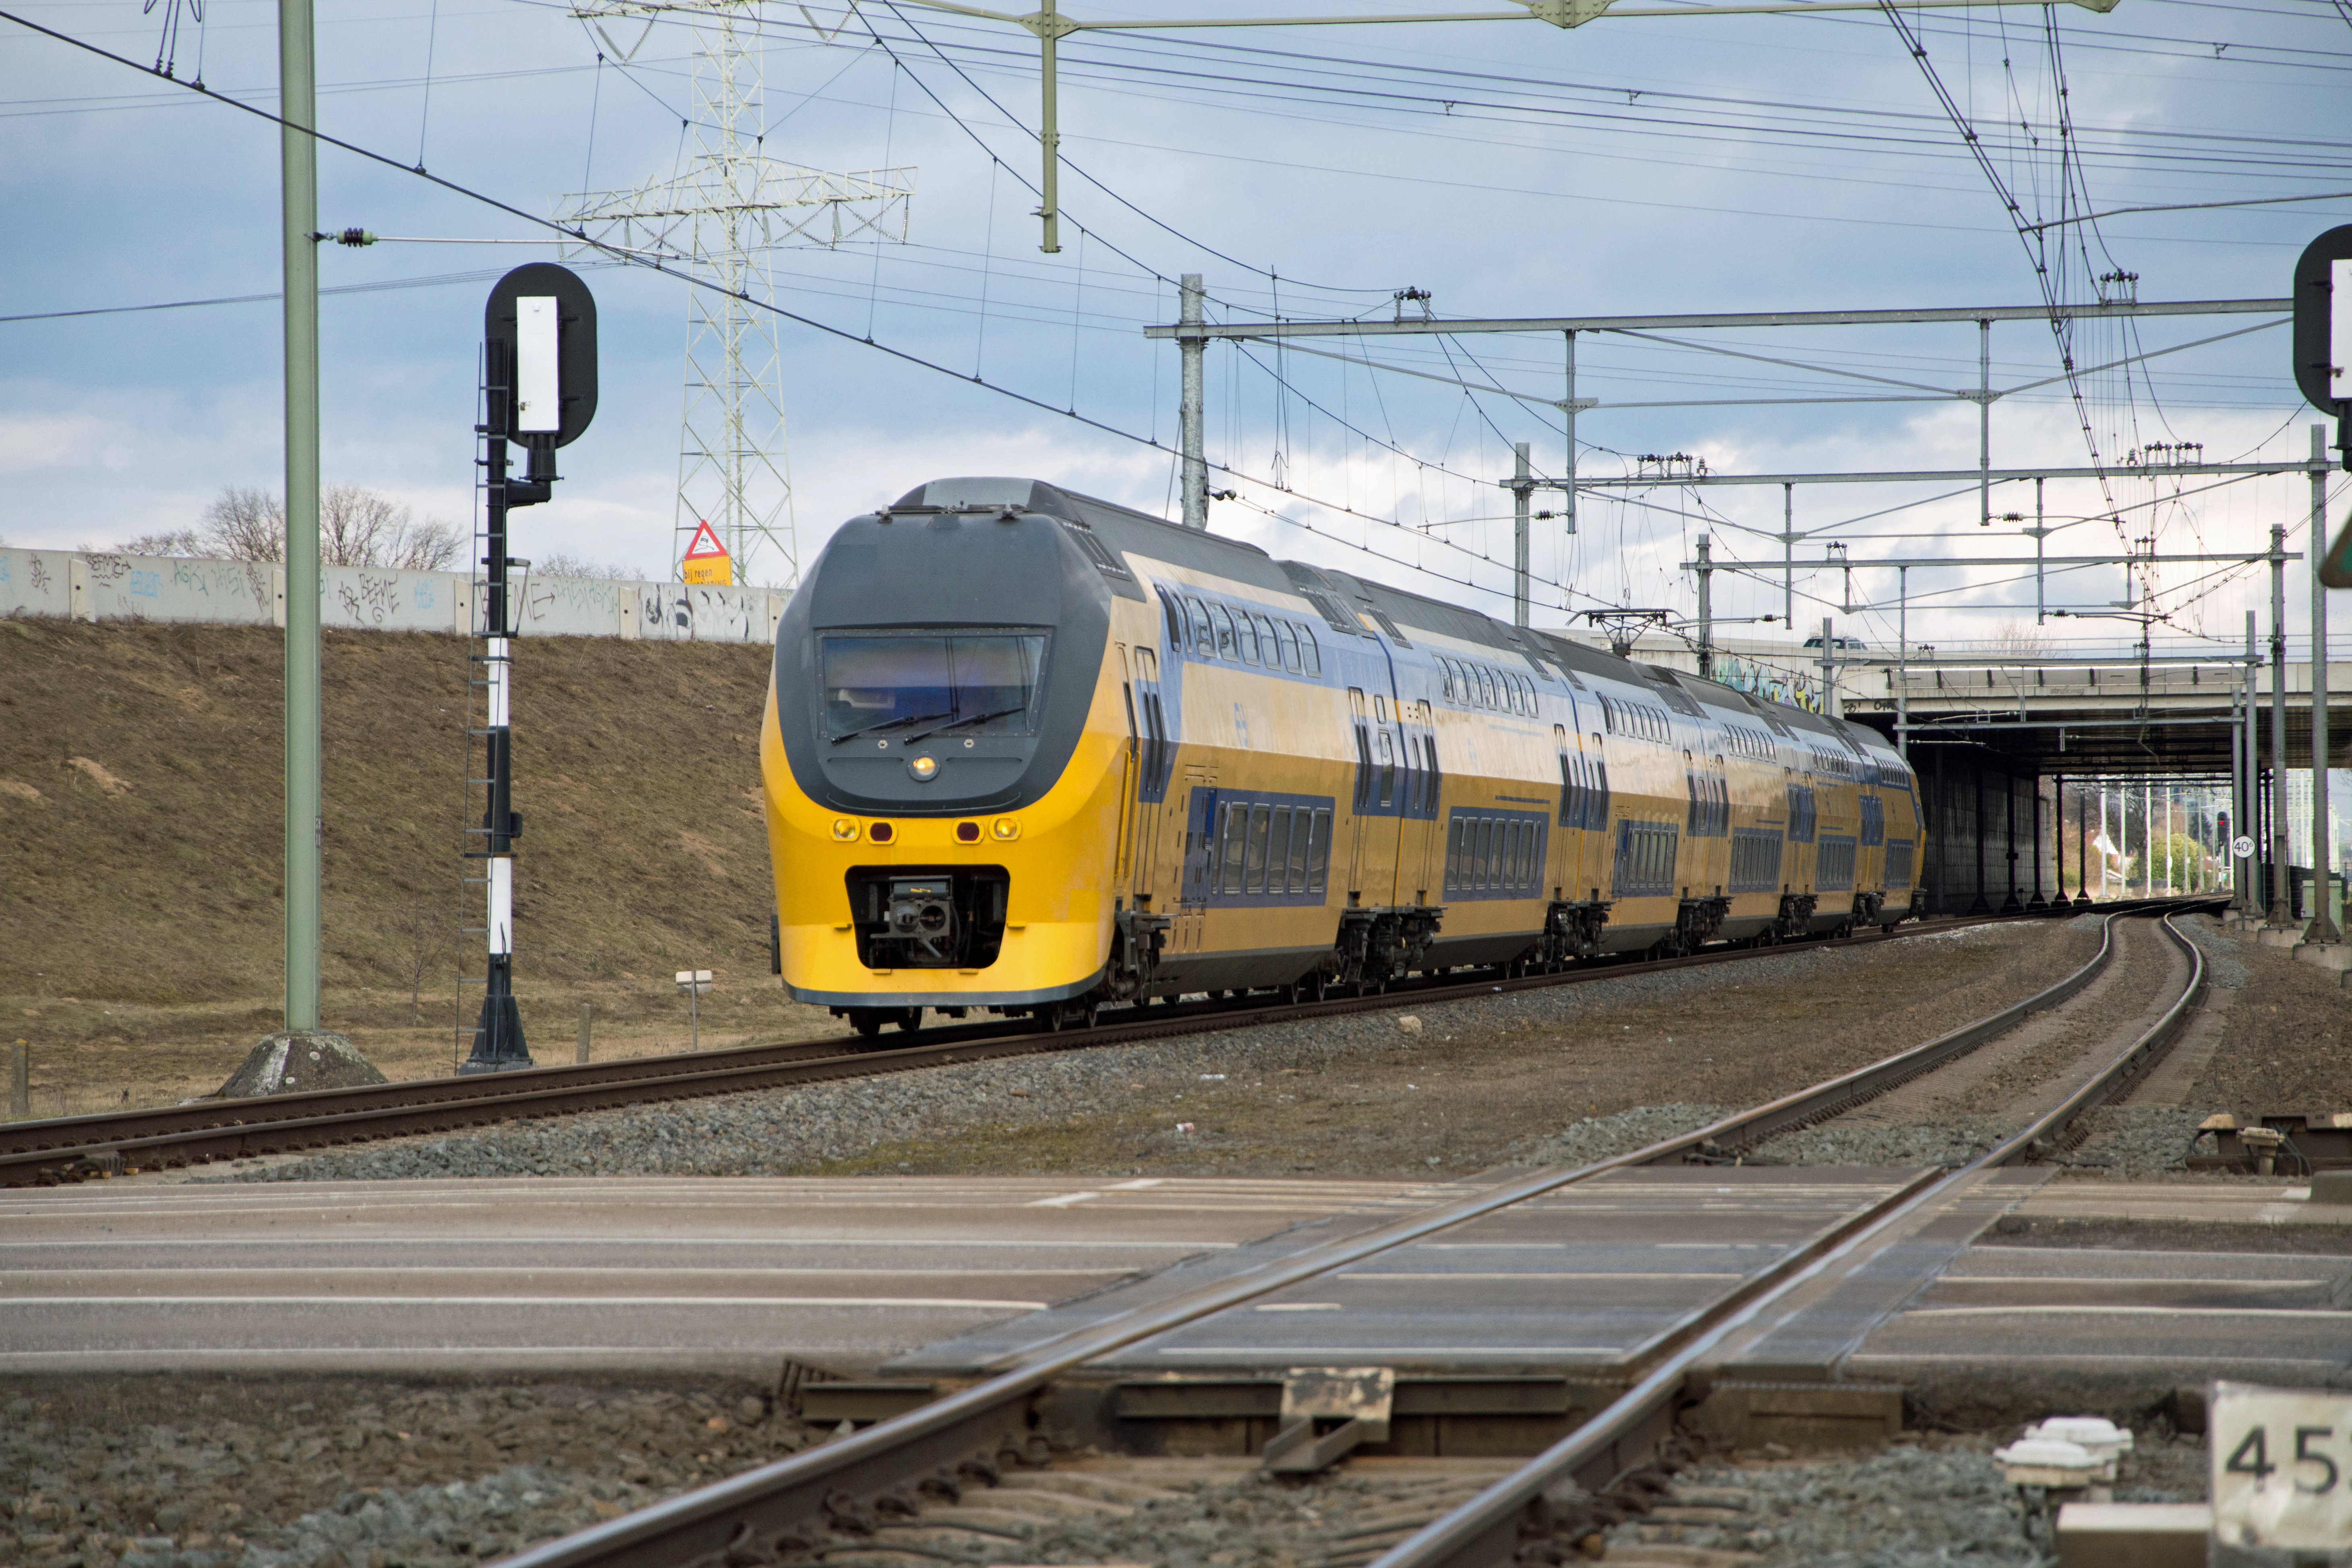 Double-decker passenger train Netherlands